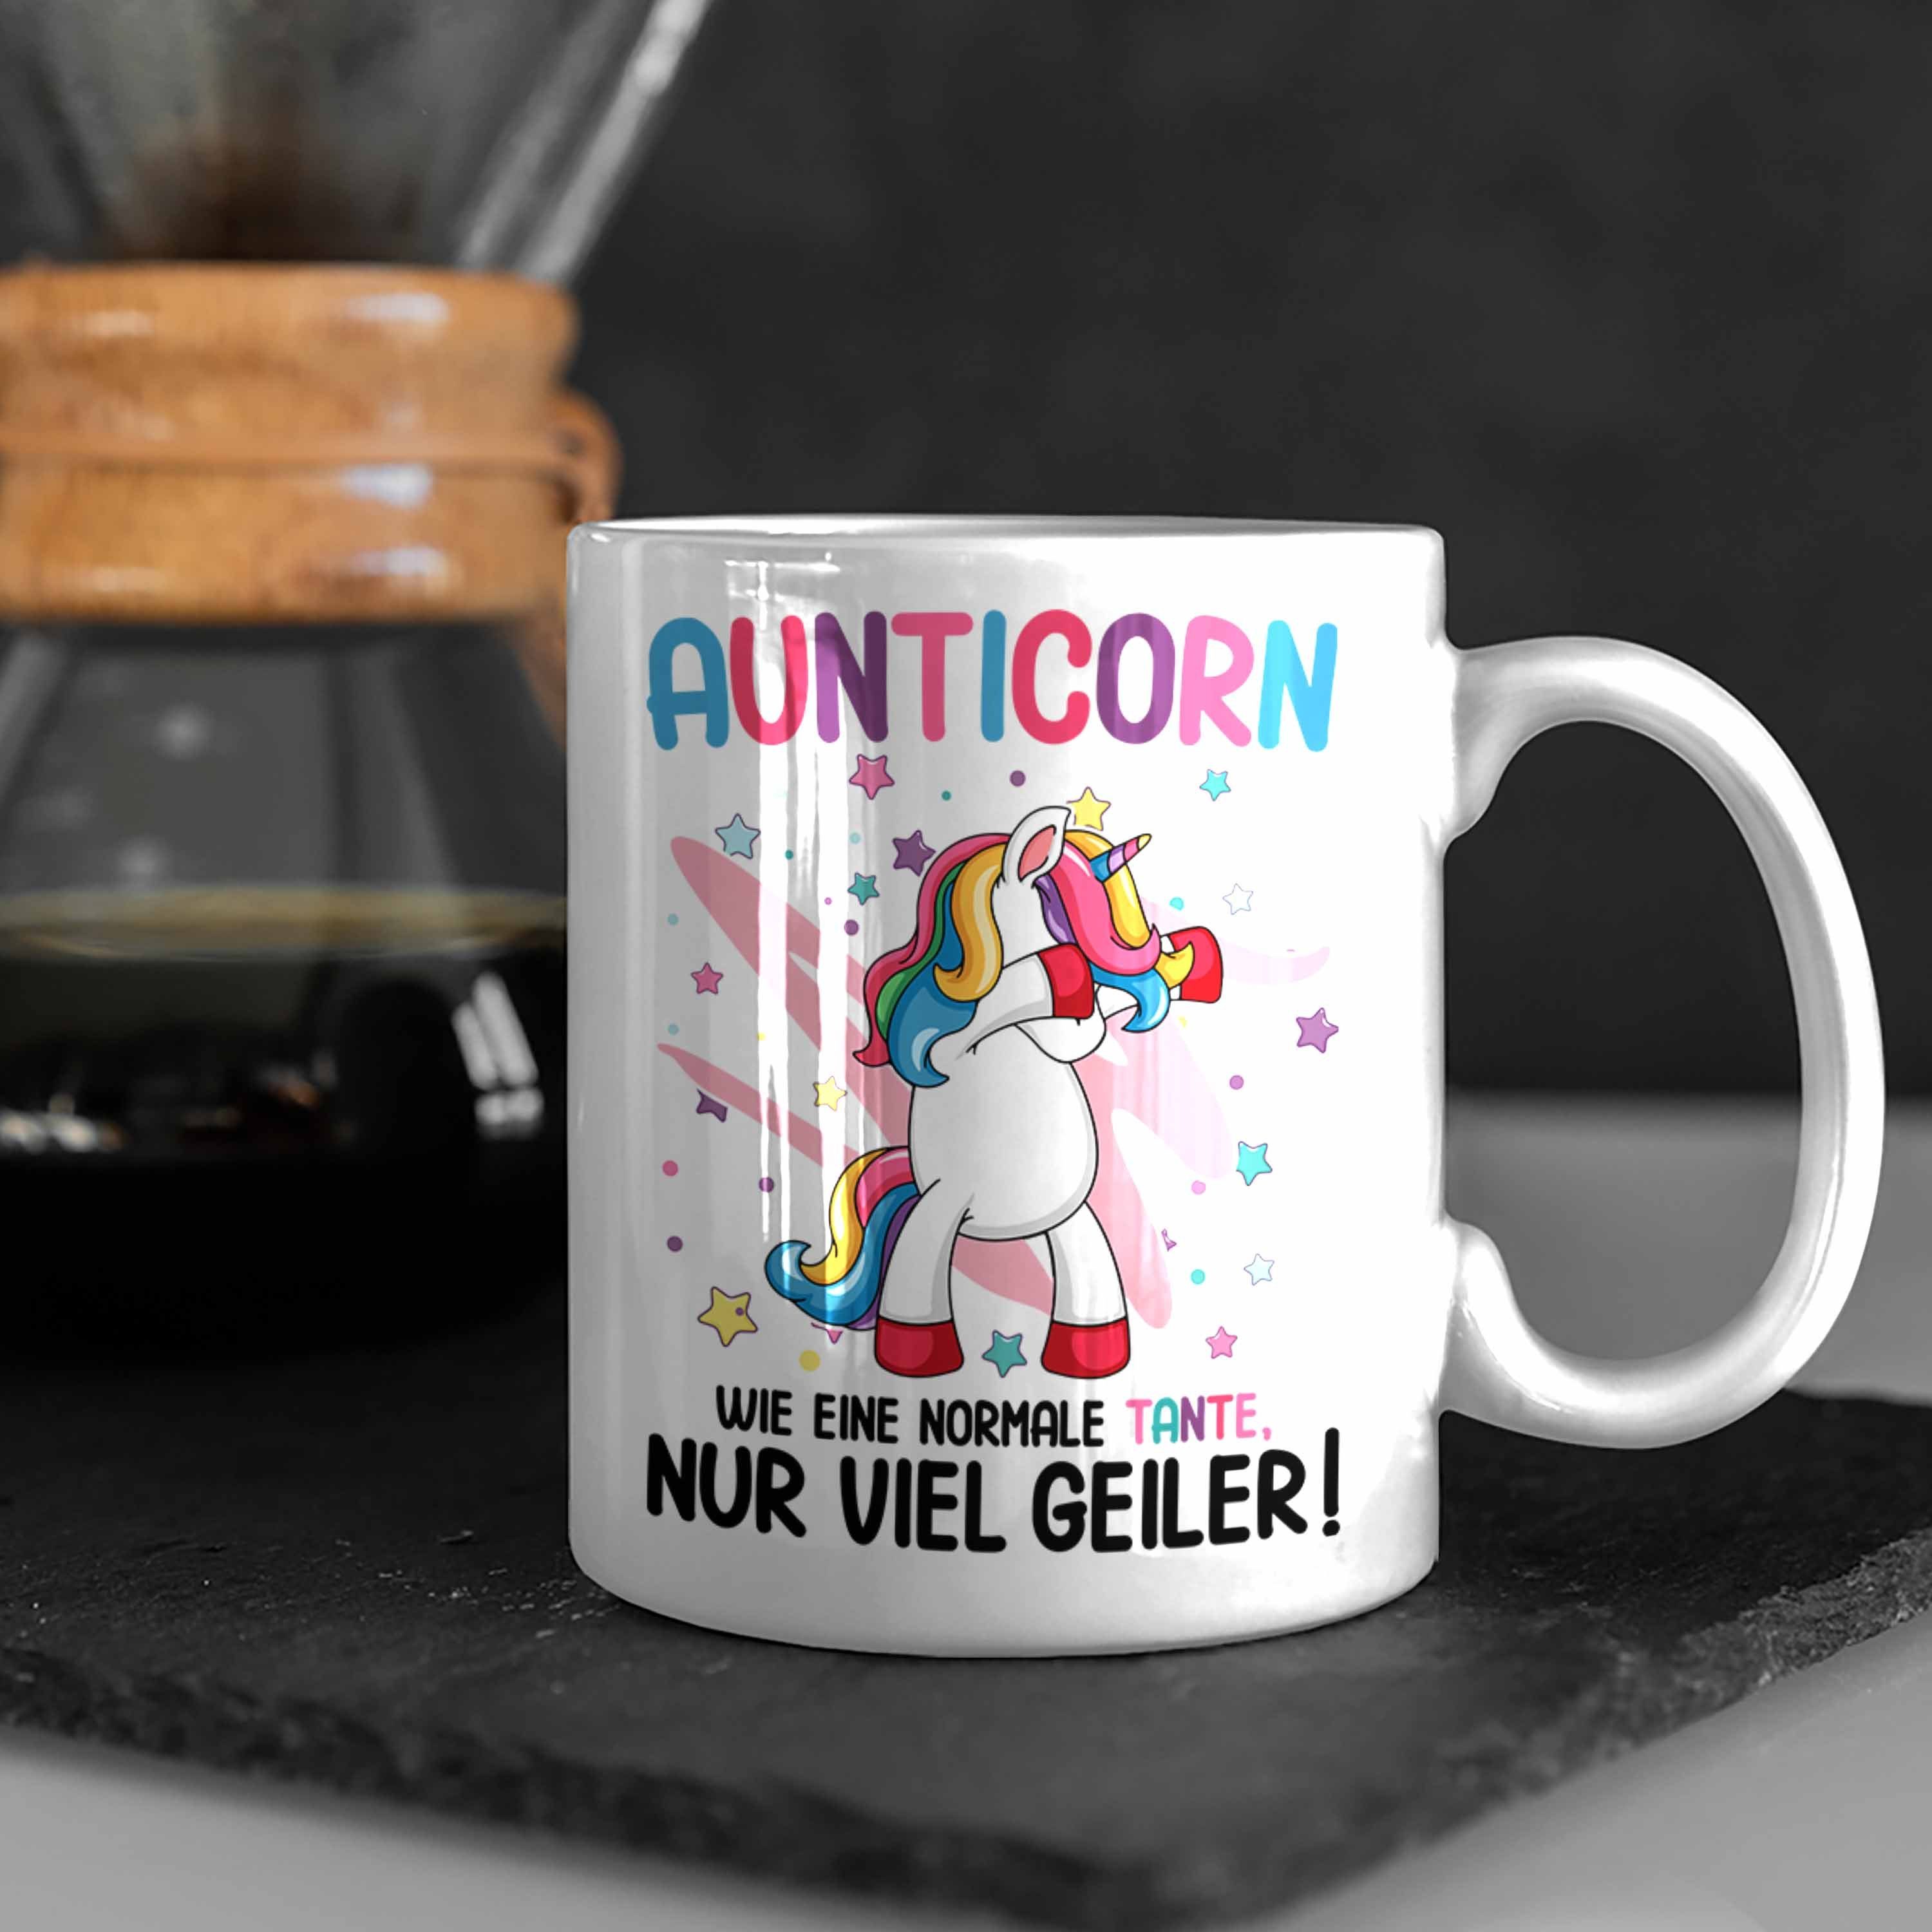 Normale Einhorn Tasse Trendation Weiss Tante Aunticorn - Wie Geburtstag Beste Trendation Lustig Geschenk Spruch Eine Tante